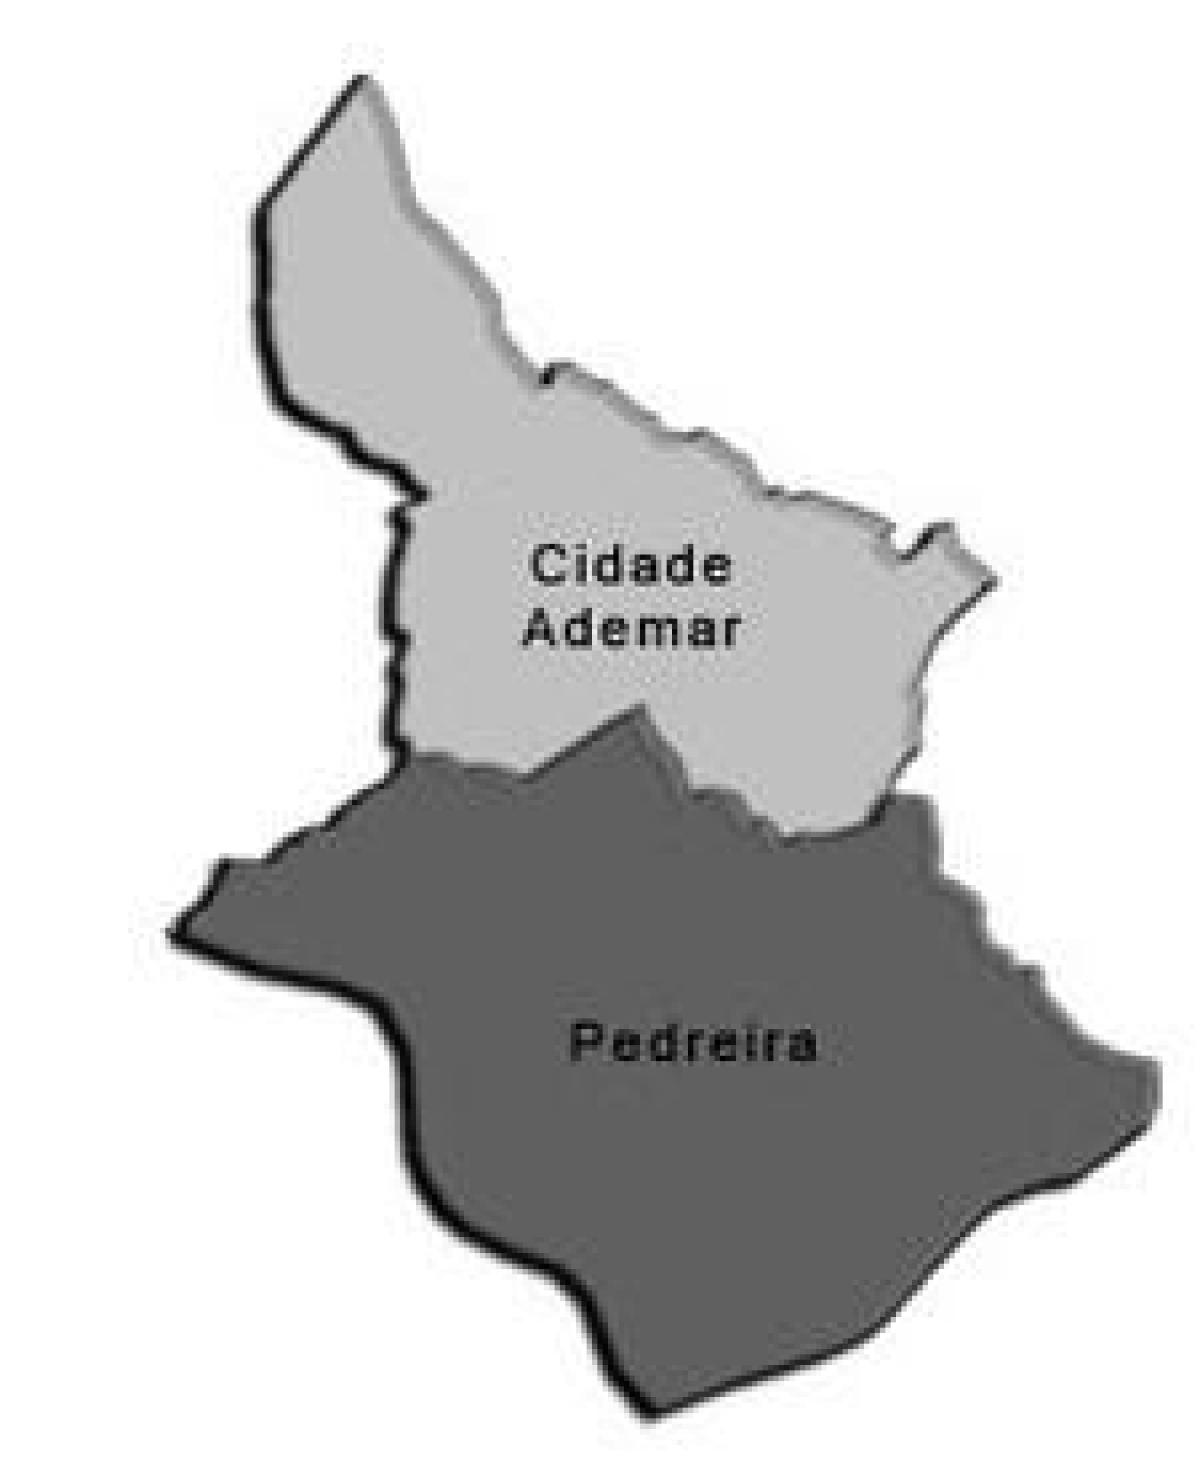 แผนที่ของ Cidade Ademar รายการย่อยขอ prefecture